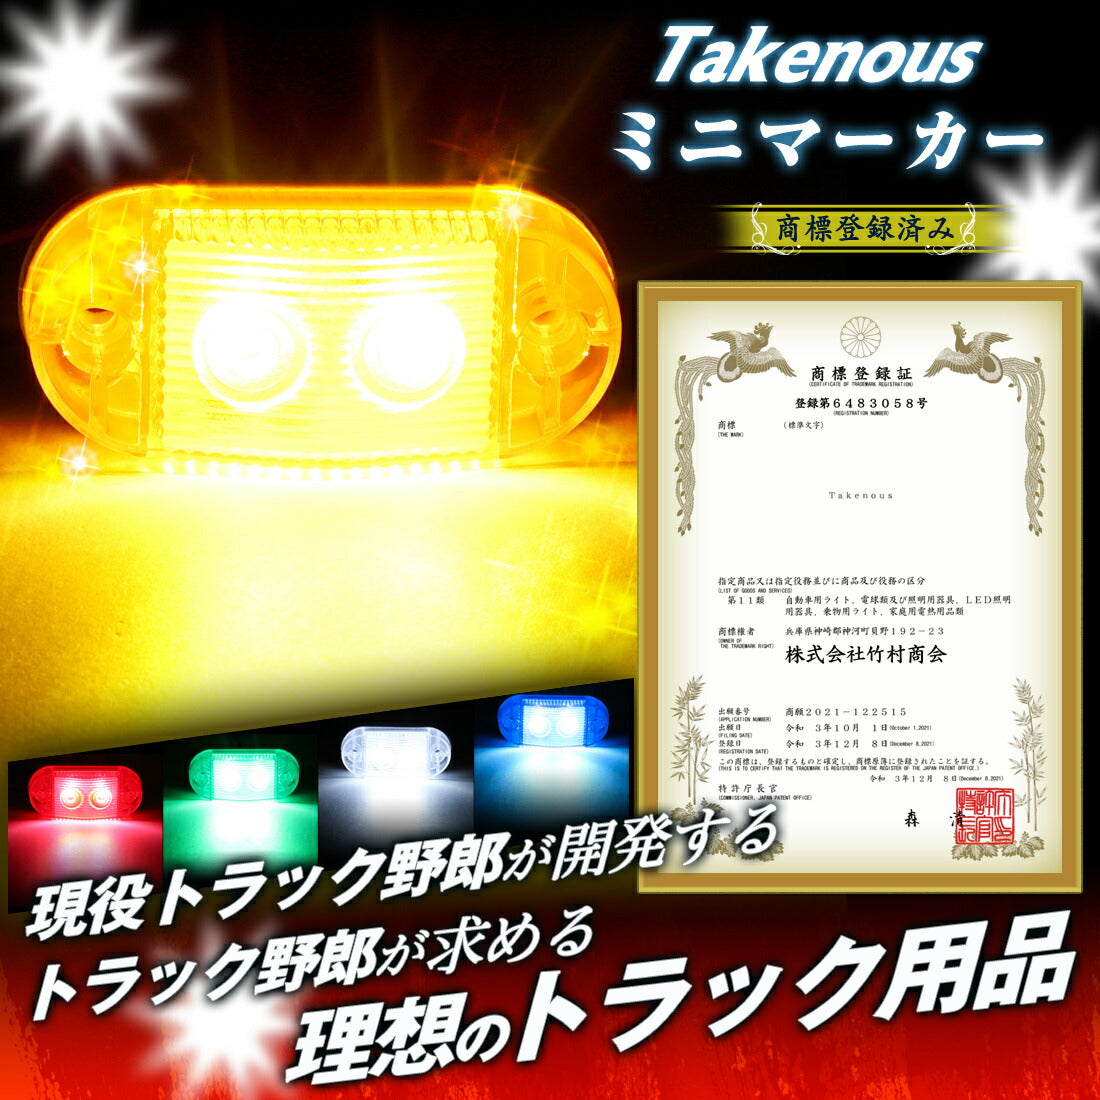 Takenous ミニマーカー(take110)